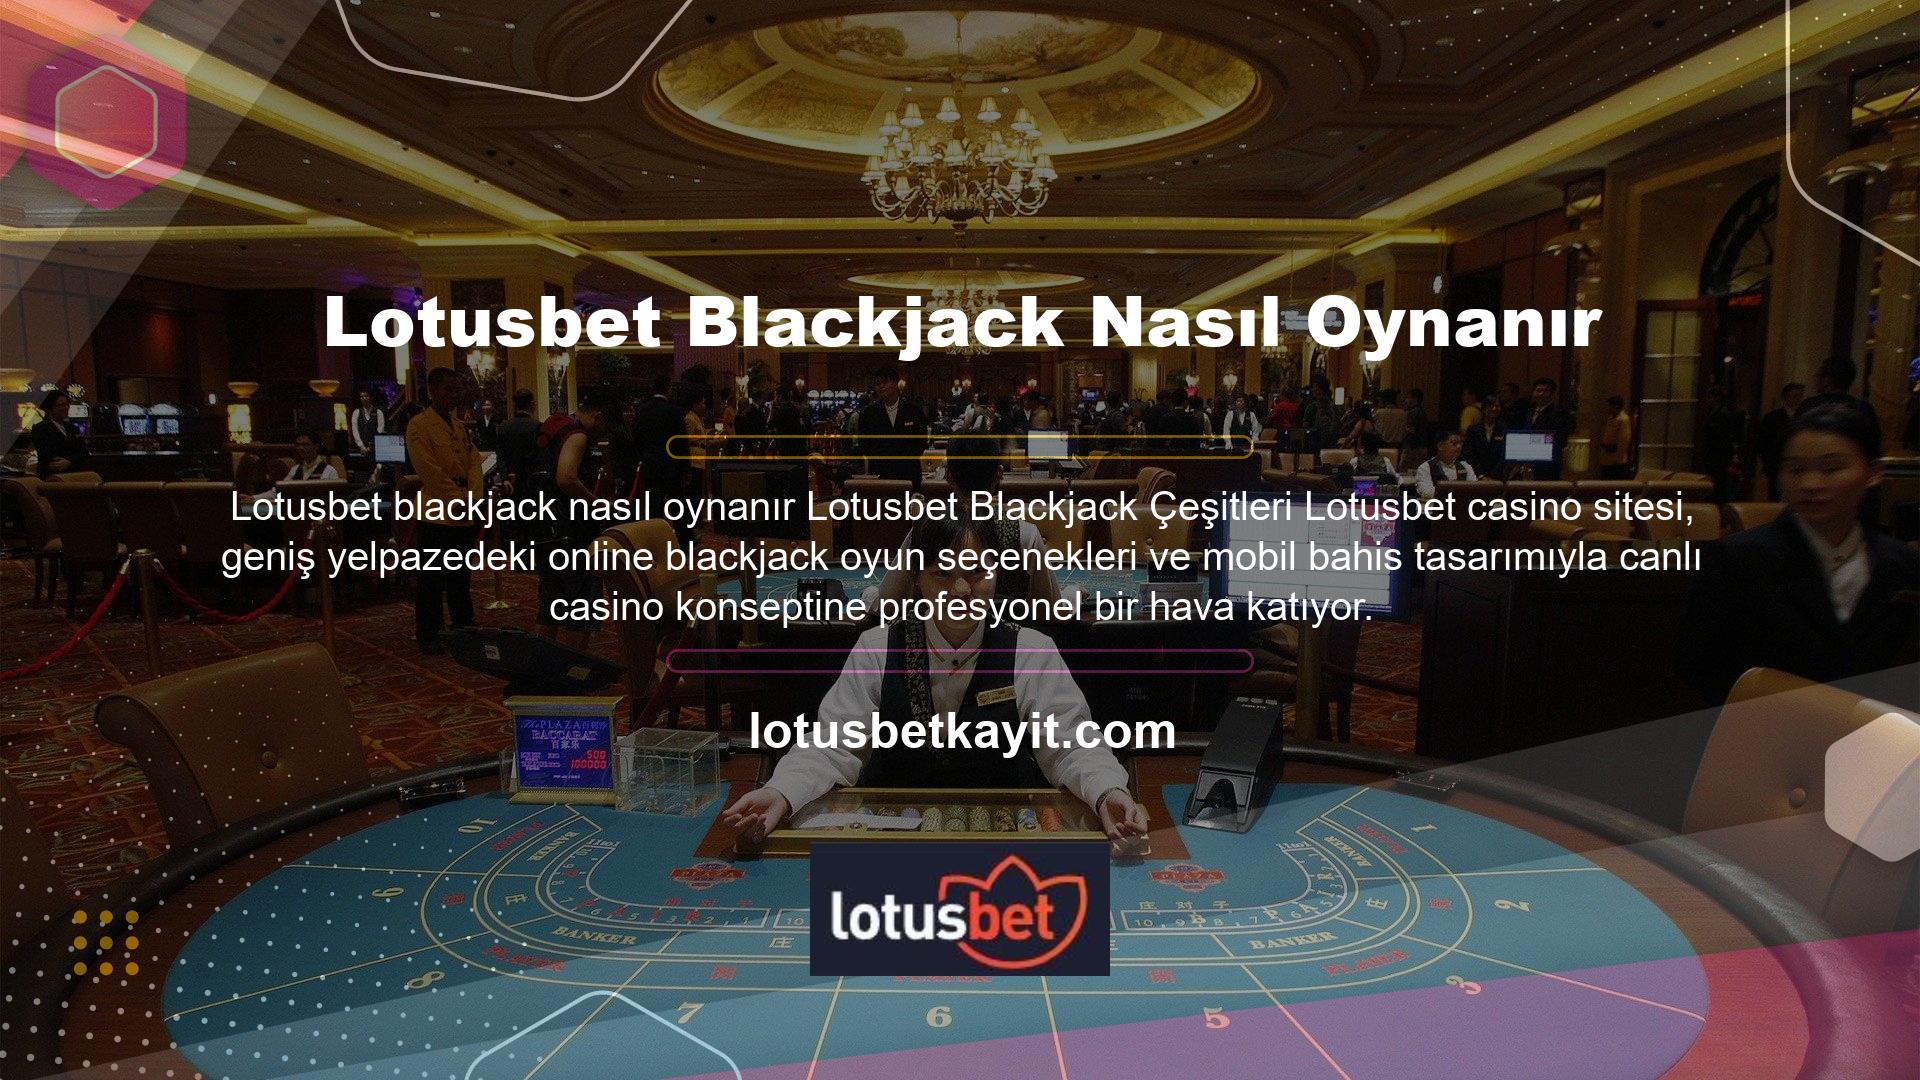 Premier Blackjack, Blackjack Pro, Double Exposure Blackjack, Single Blackjack ve Canlı Blackjack güvenilir seçeneklerden sadece birkaçıdır